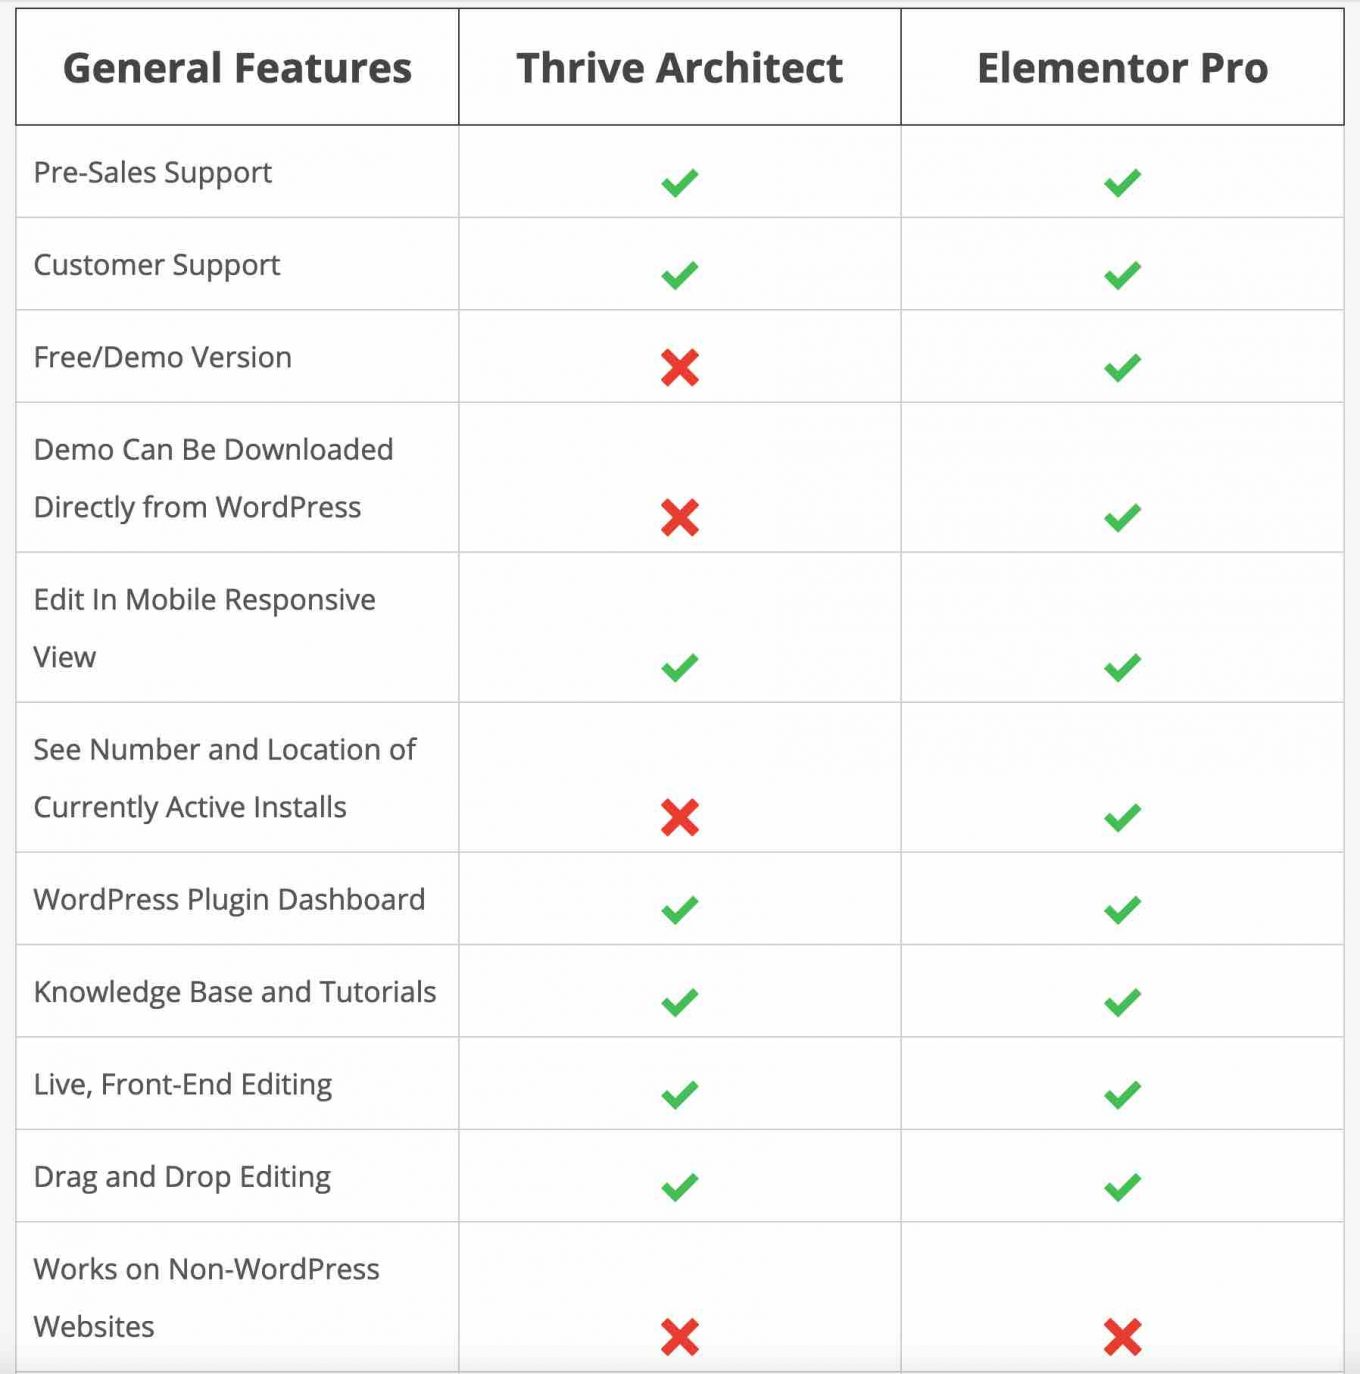 Comparaison de Thrive Architect et Elementor Pro